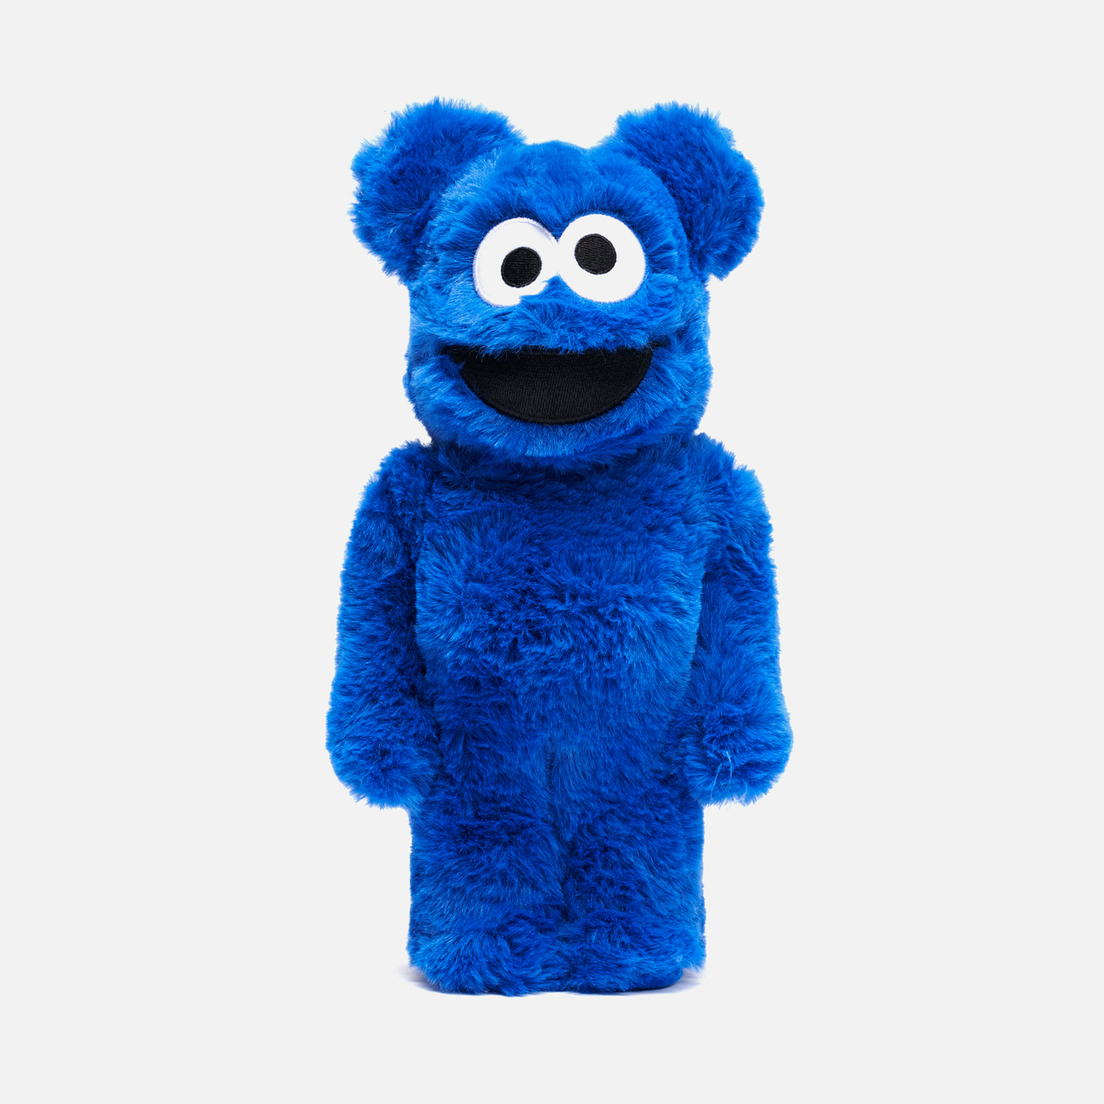 Medicom Toy Игрушка Cookie Monster Costume 400%